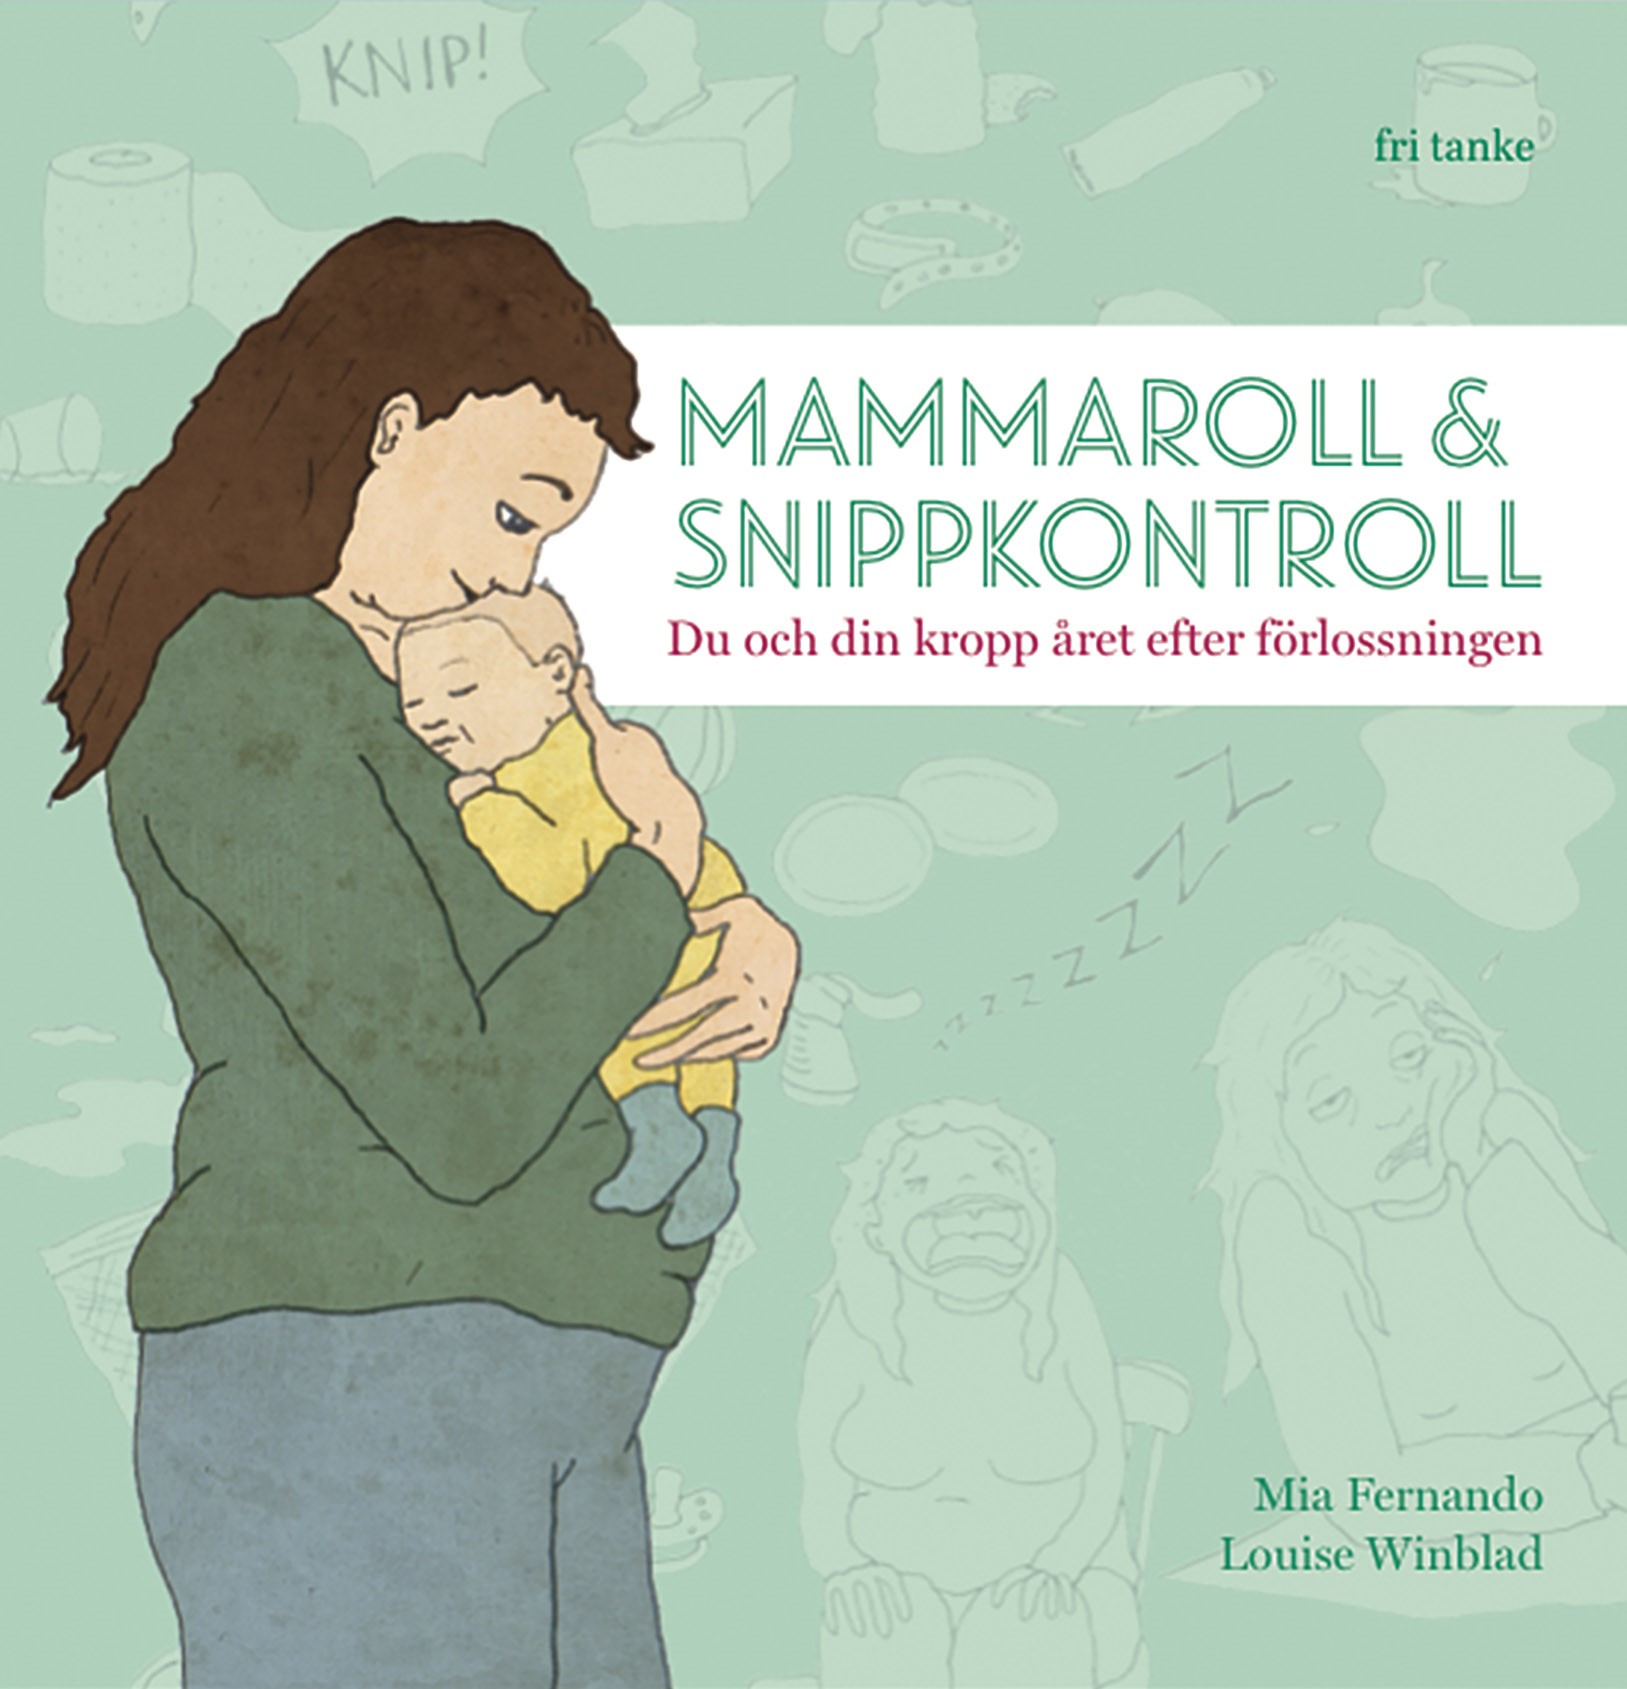 Mammaroll & Snippkontroll: Du Och Din Kropp Året Efter Förlossningen